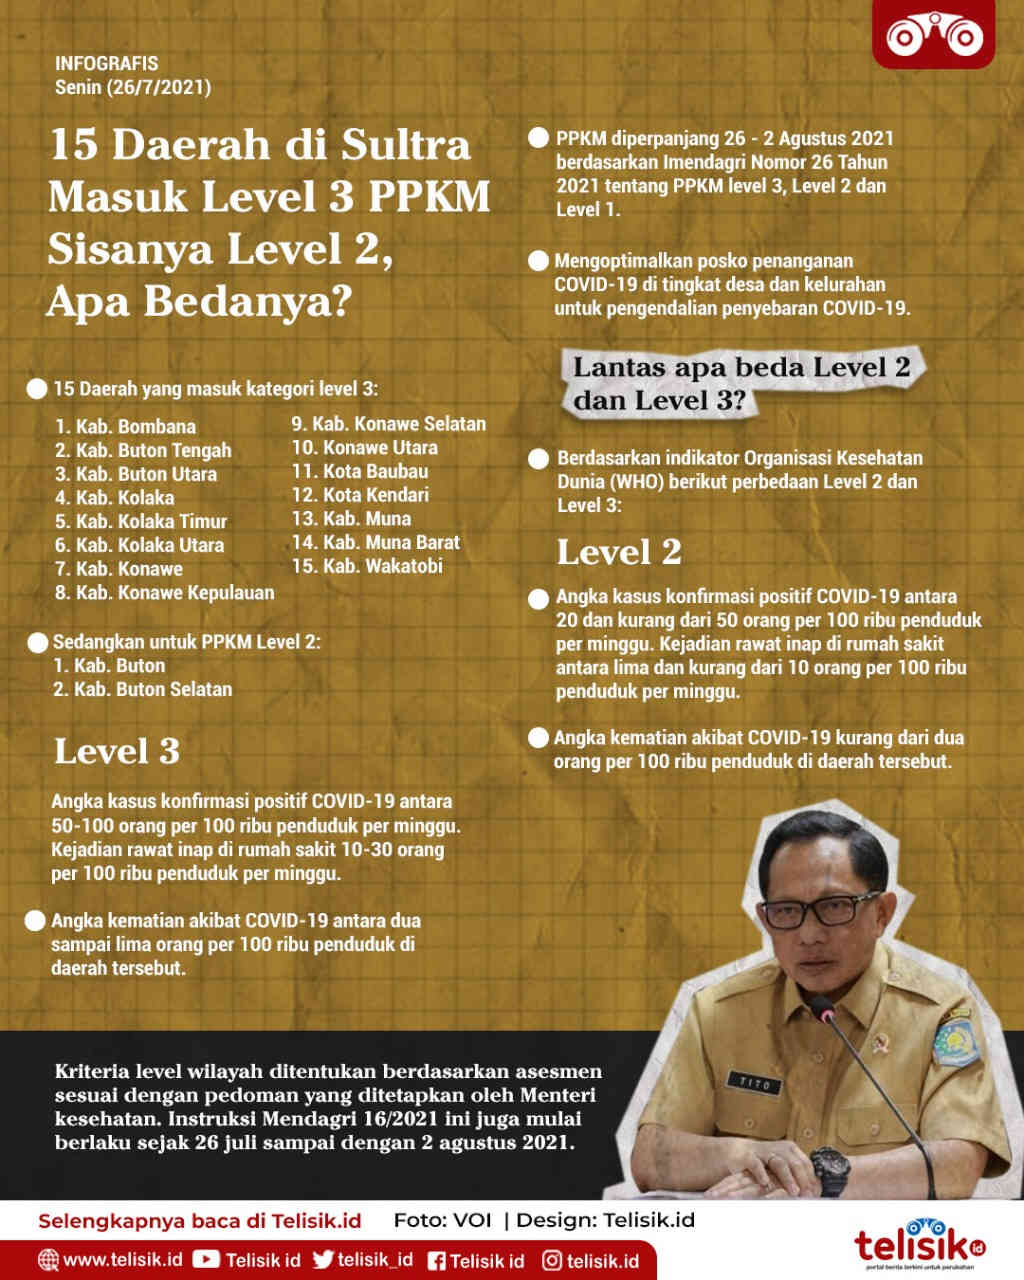 Infografis: 15 Daerah di Sultra Masuk Level 3 PPKM, Sisanya Level 2, Apa Bedanya?